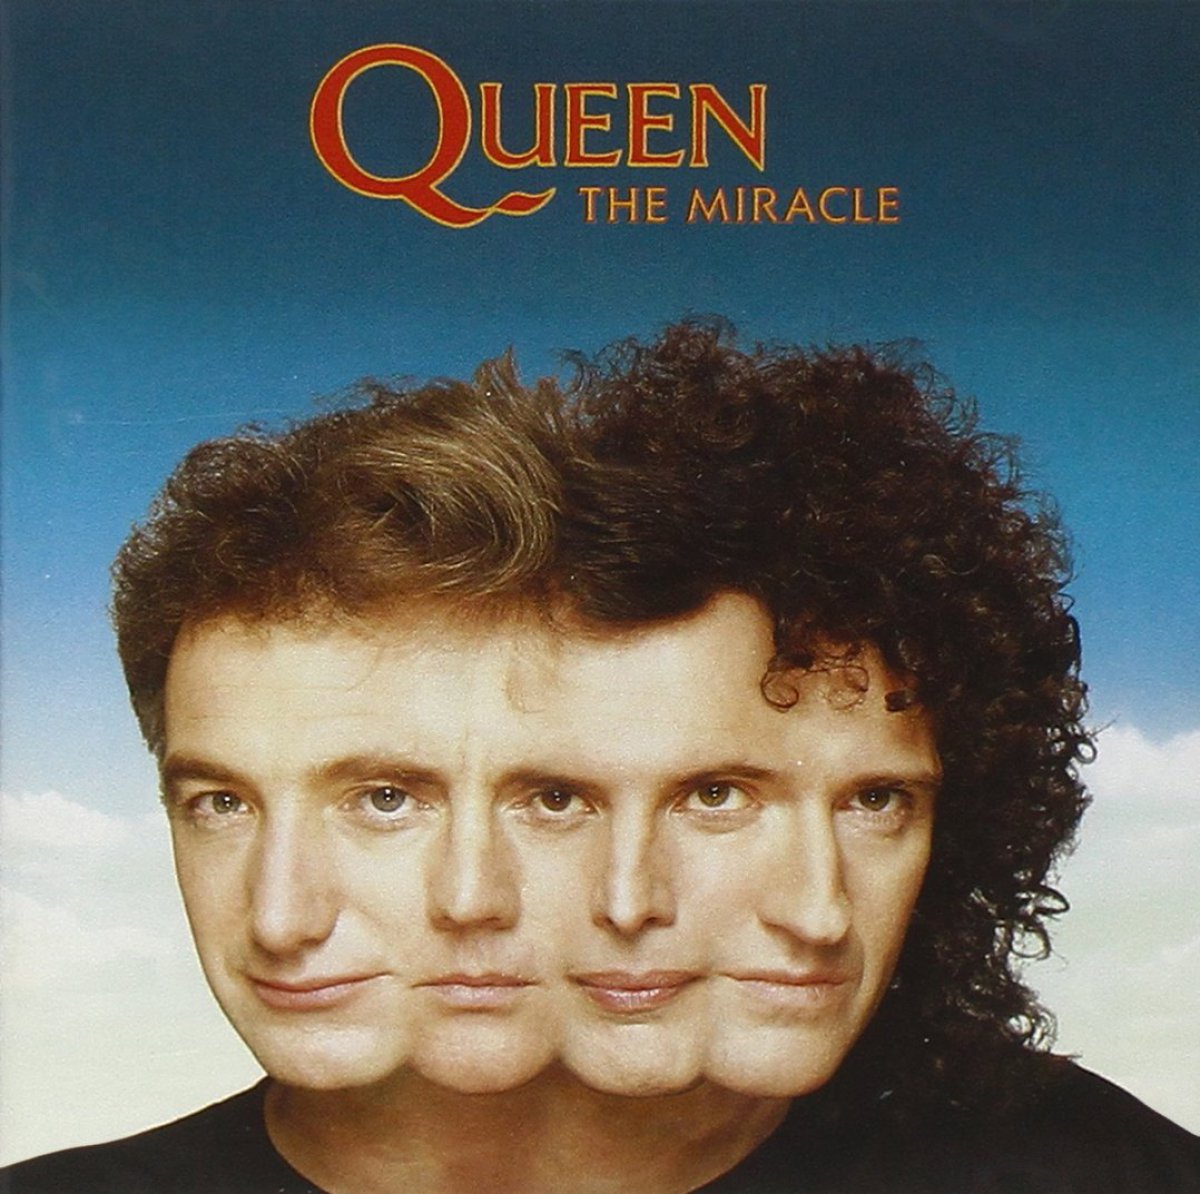 Queen - 'The Miracle' (22 de mayo 1989)